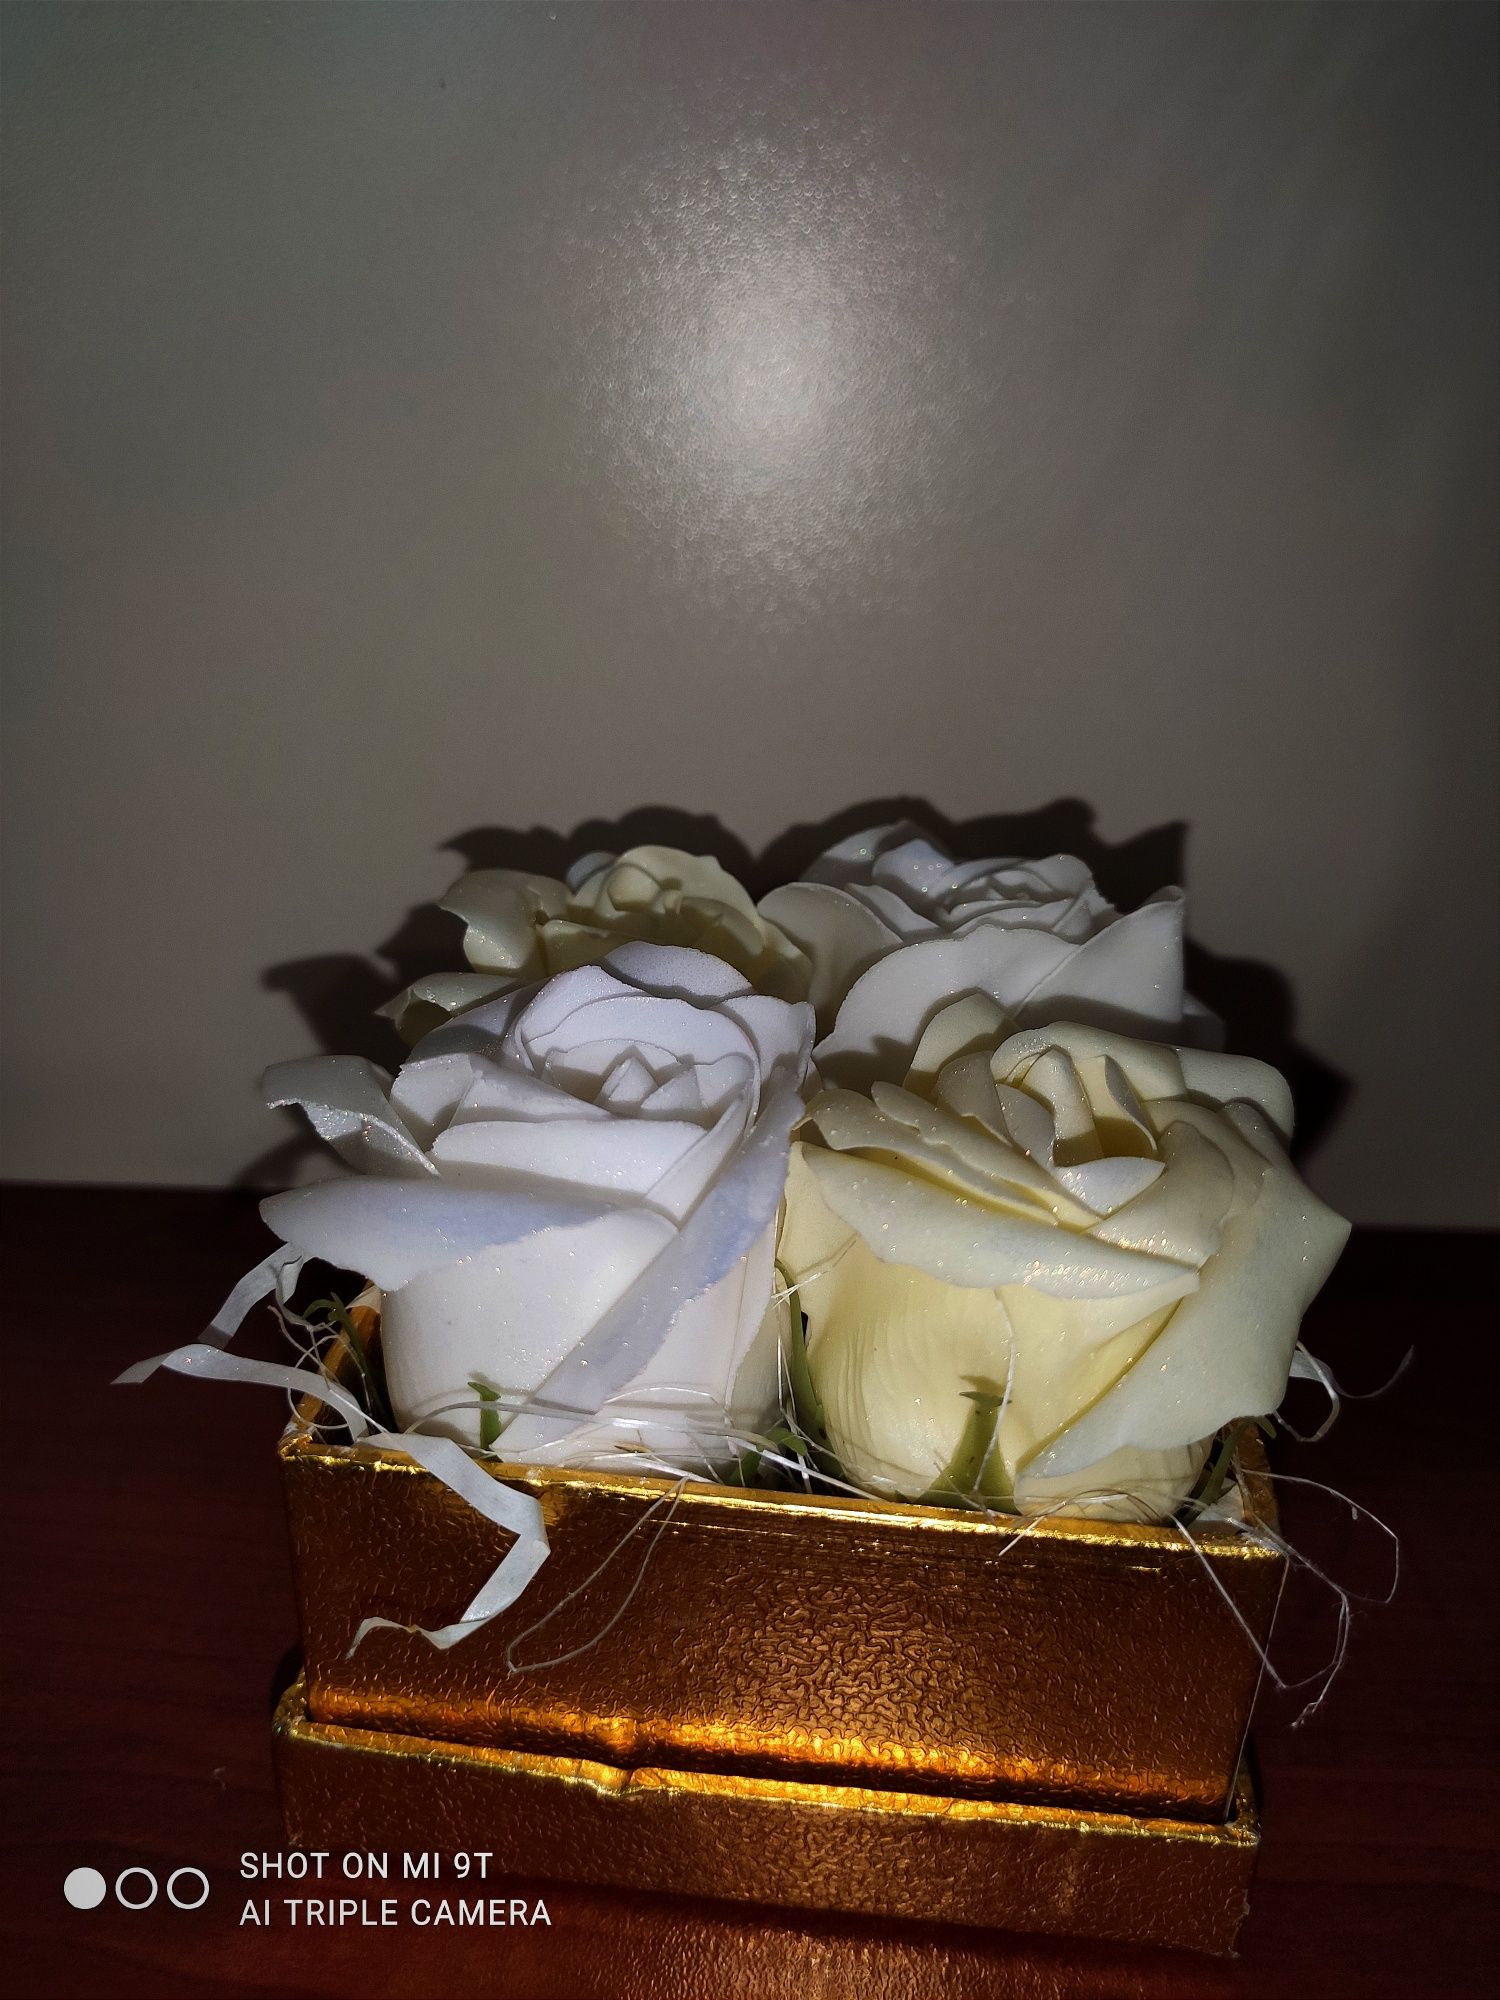 Ароматни сапунени рози в кутия